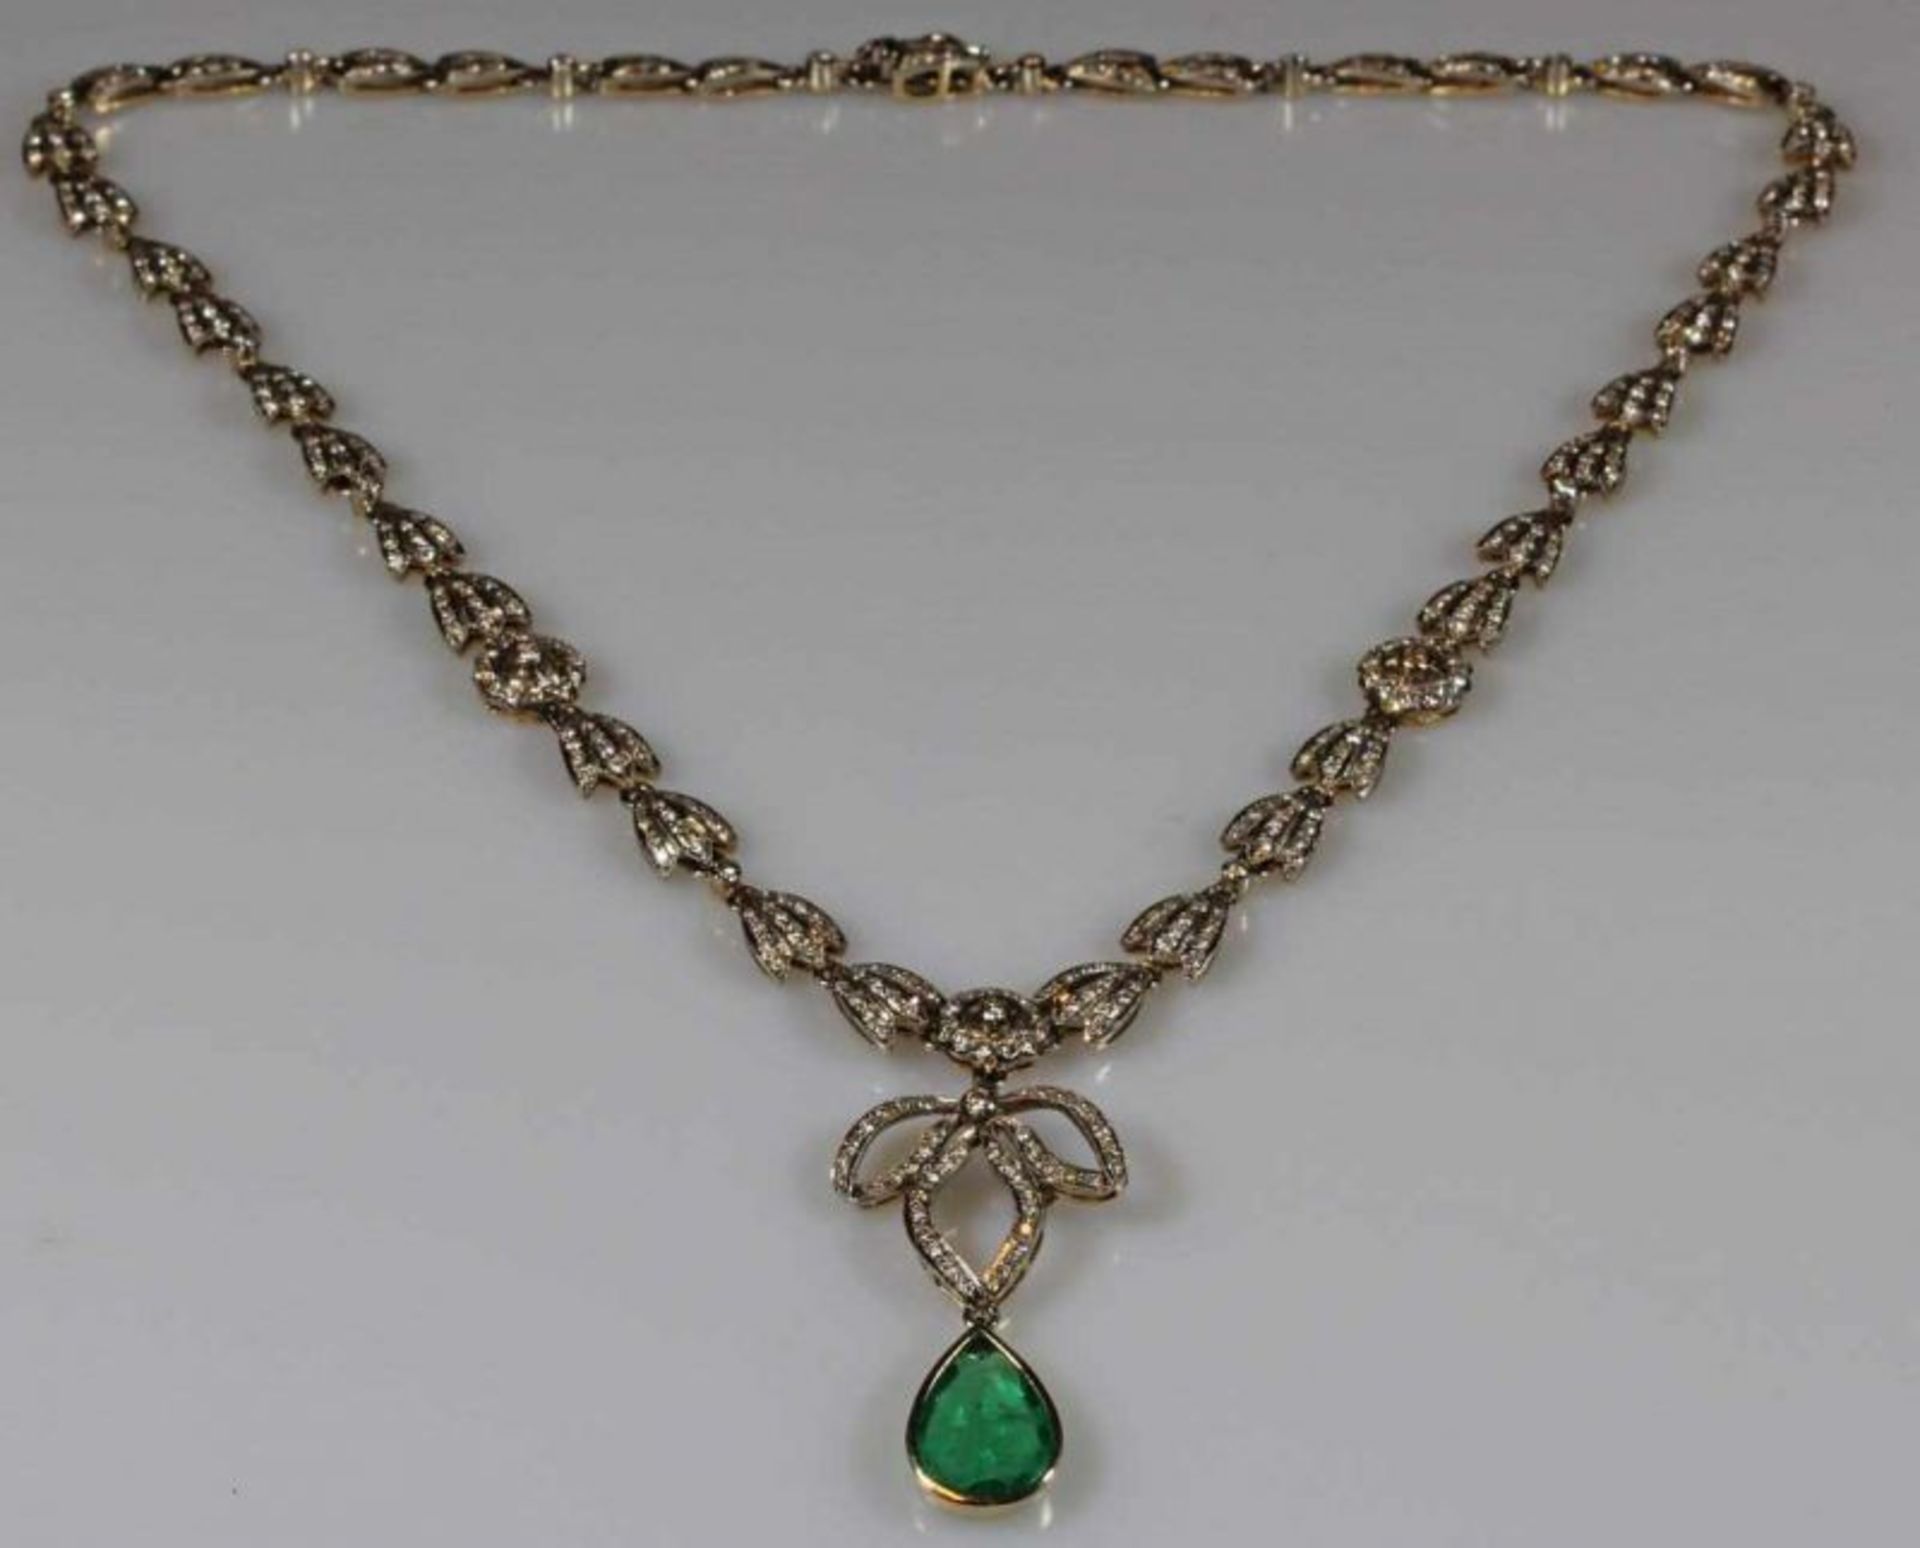 Collier, mit abnehmbarem Anhänger, 1920er/30er Jahre, feine Juwelierarbeit, GG 750, weiß belötet,